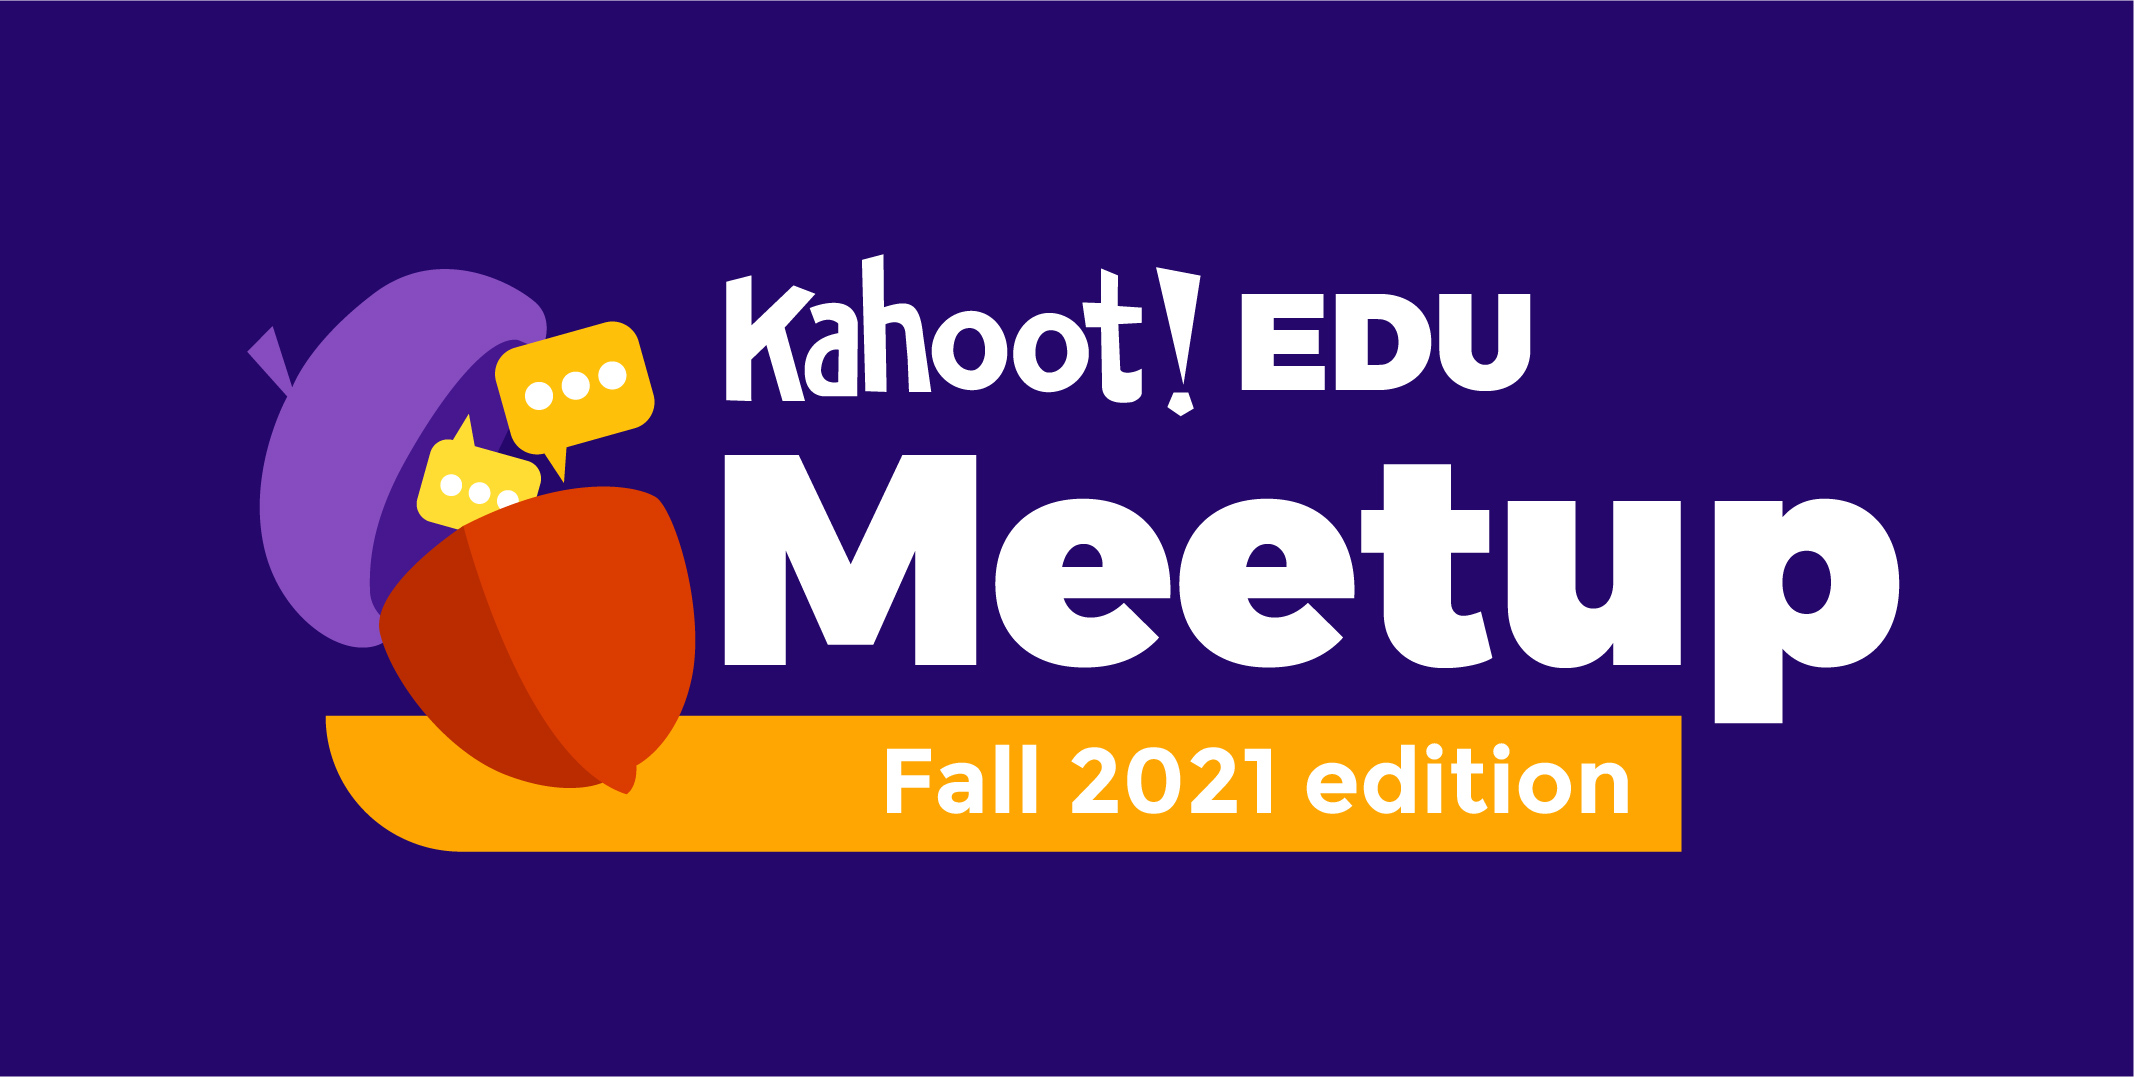 Kahoot! EDU Meetup